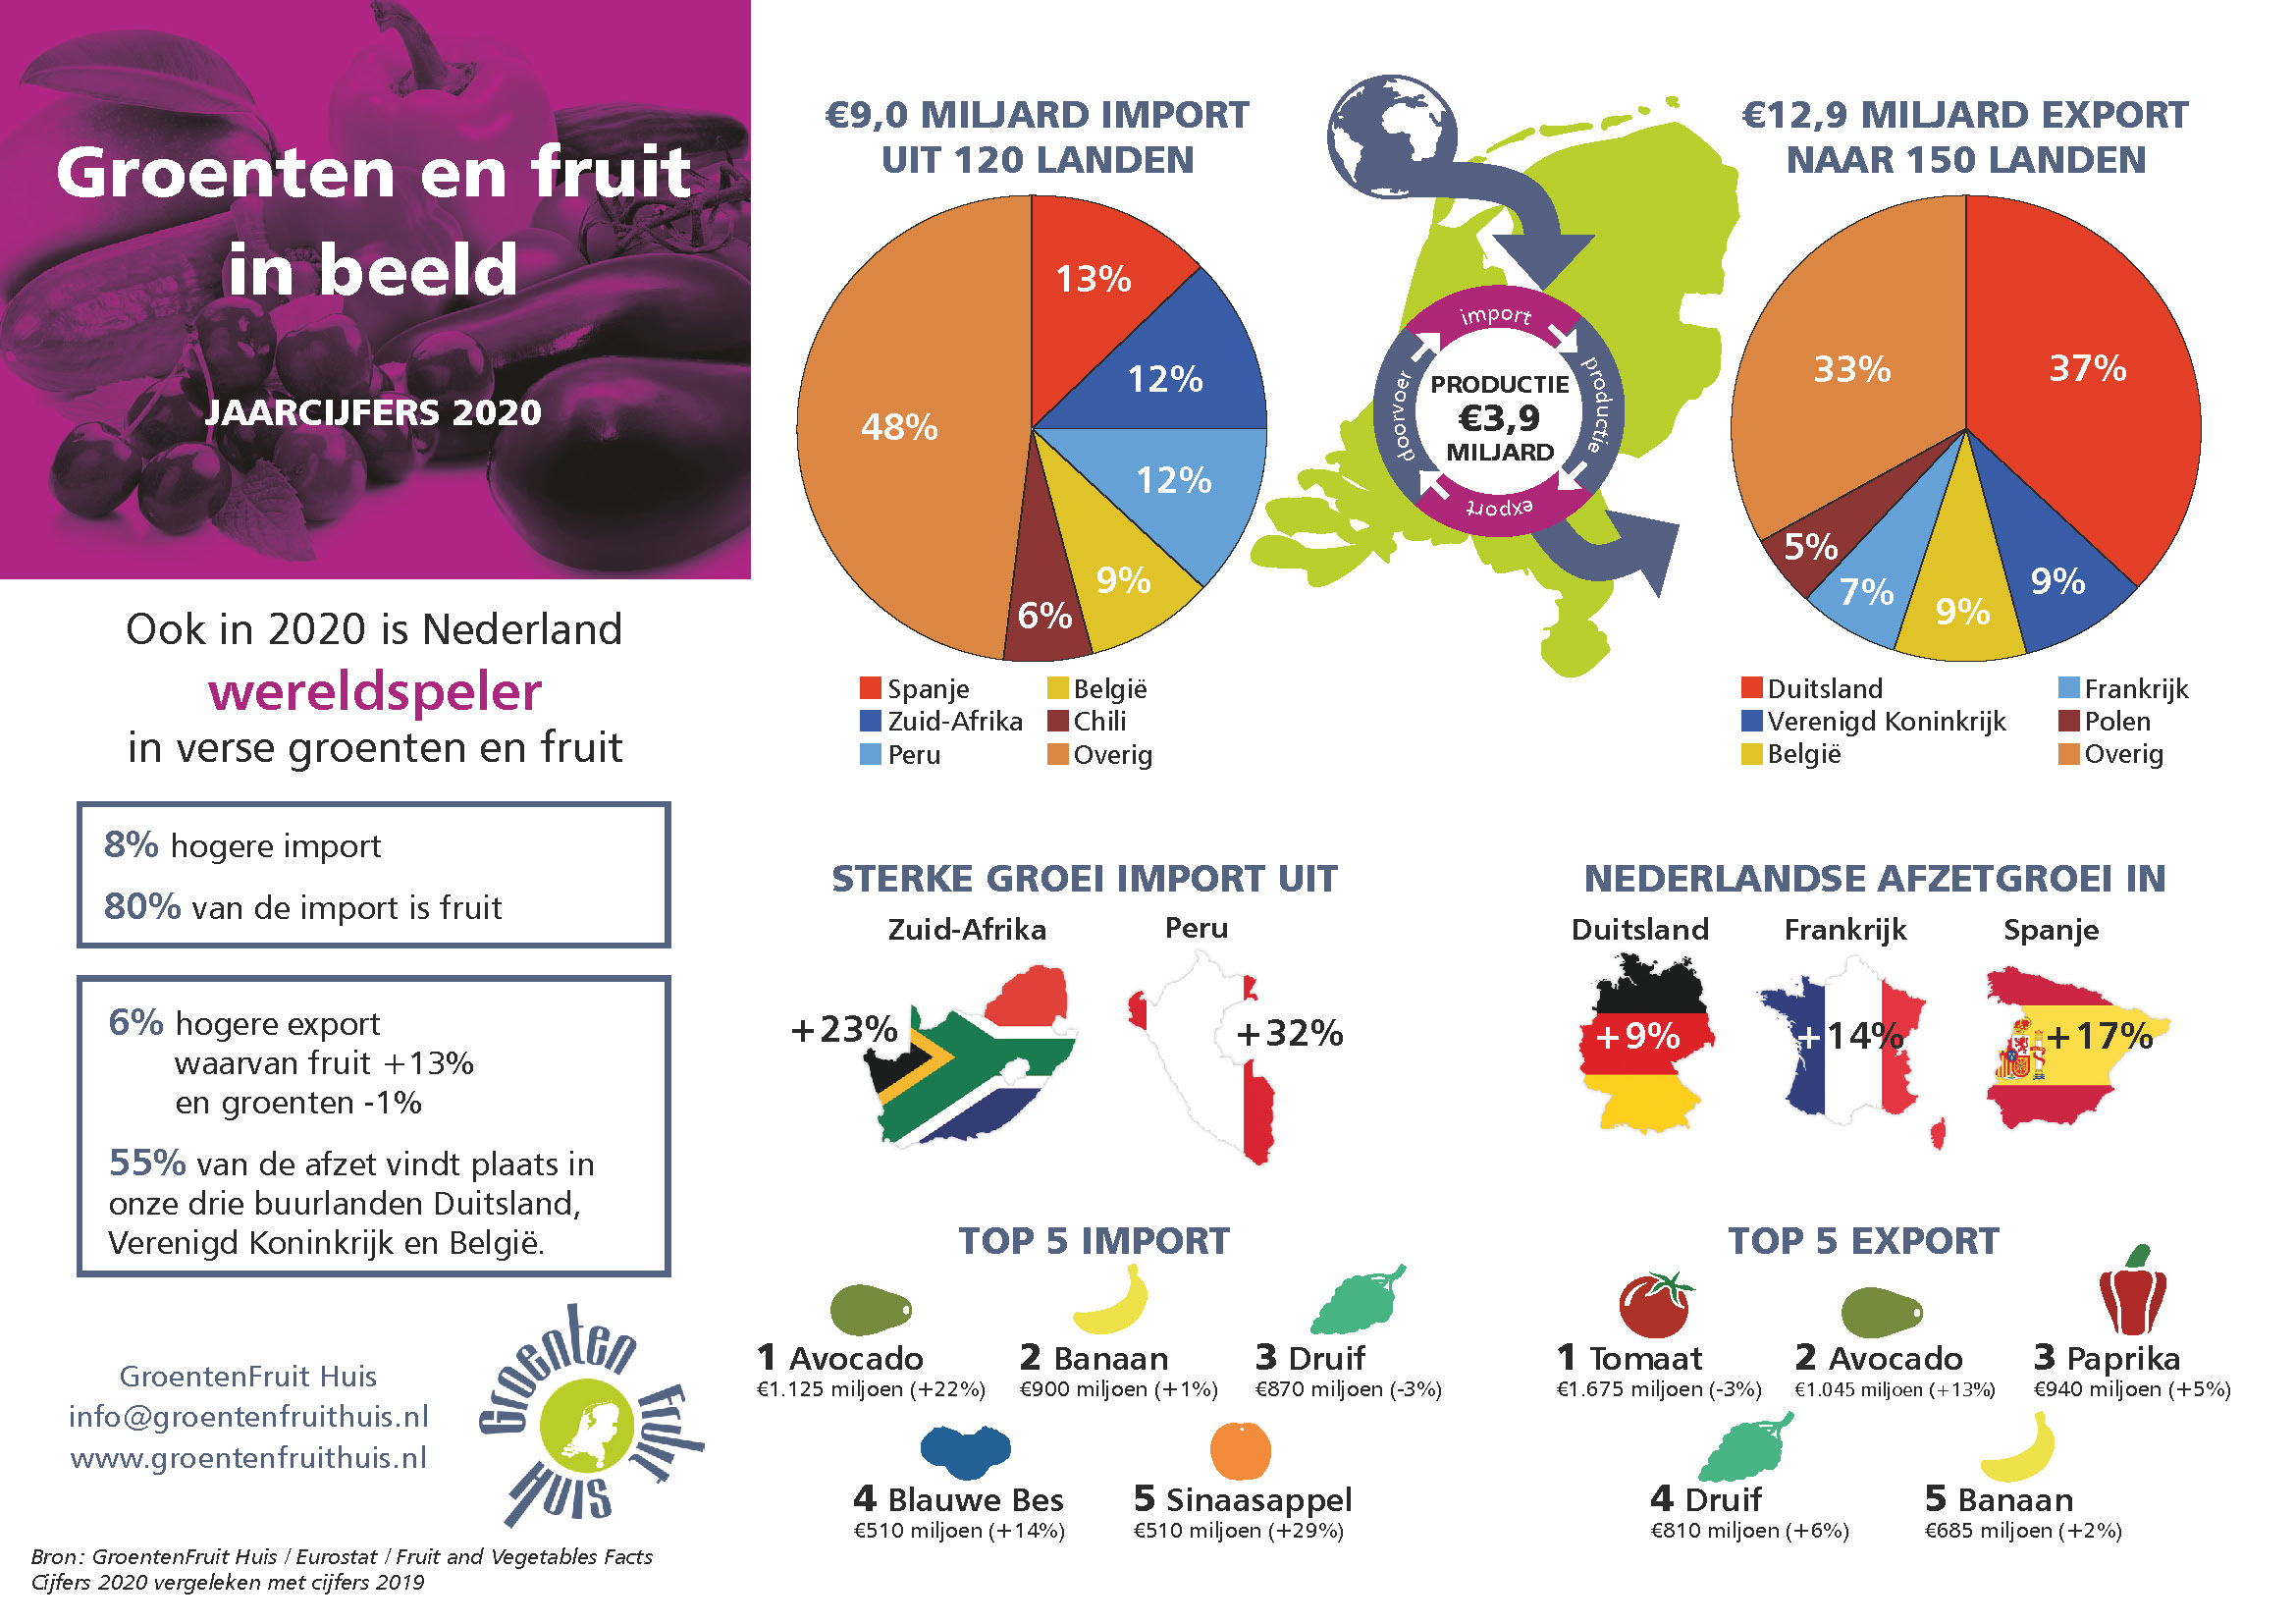 Factsheet 'Groenten en fruit in beeld - Jaarcijfers 2020' van GroentenFruit Huis